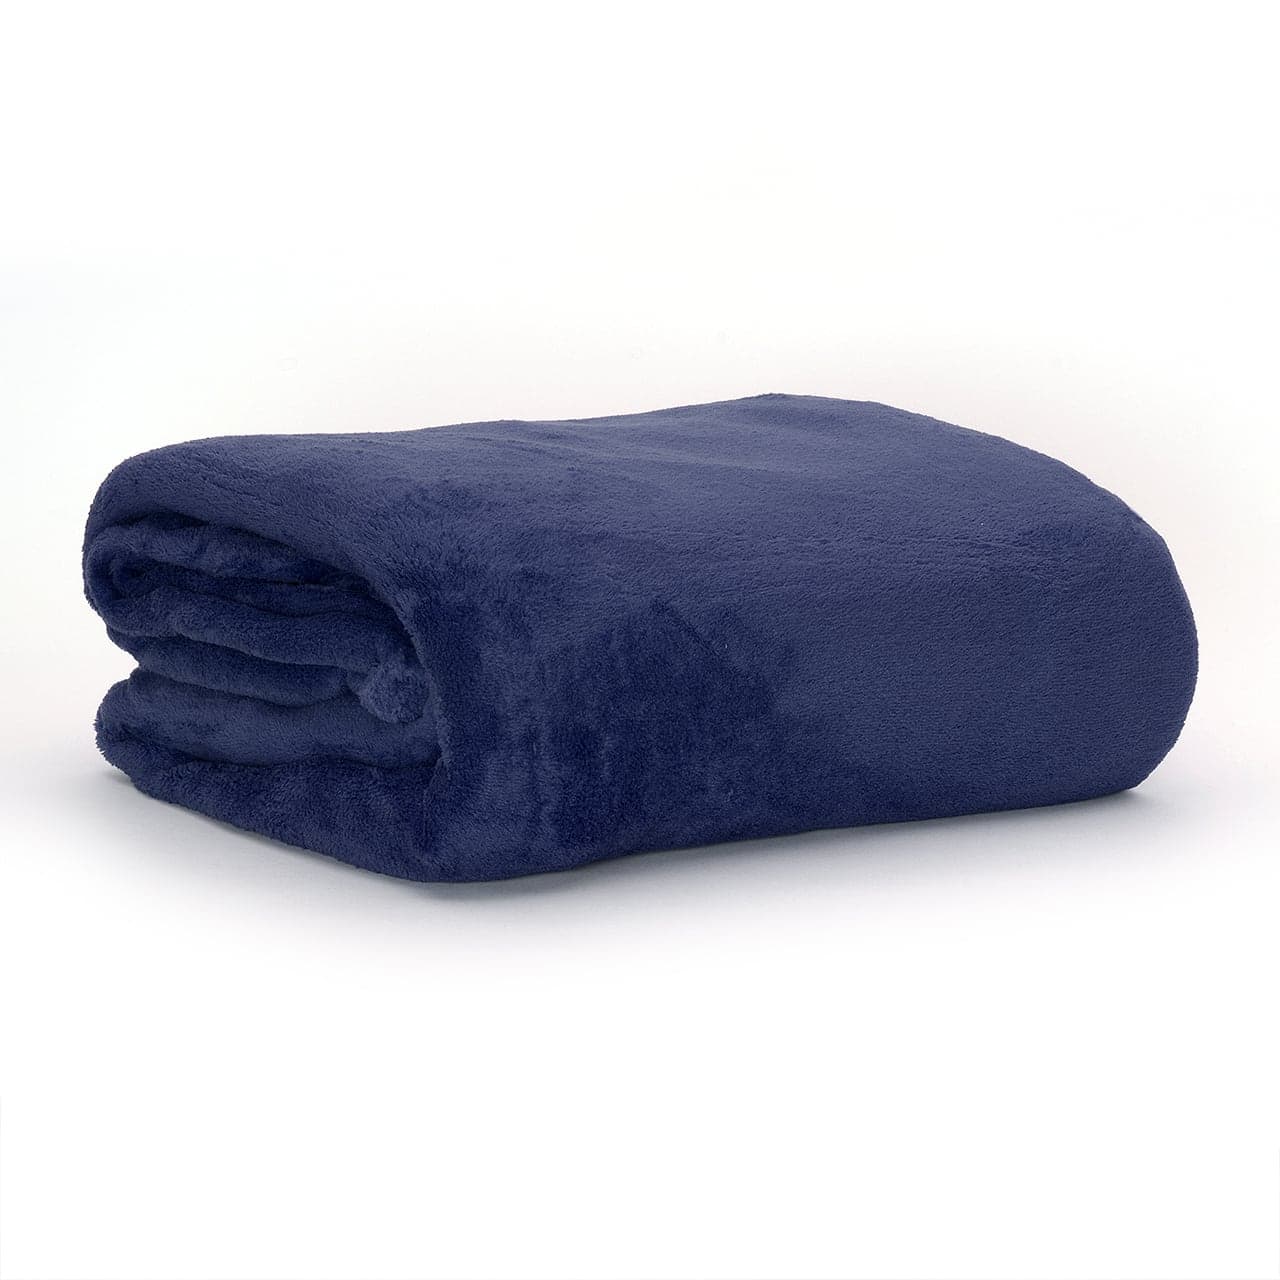 CKB LTD | Snug Rug DELUXE Blanket With Sleeves | Navy Blue